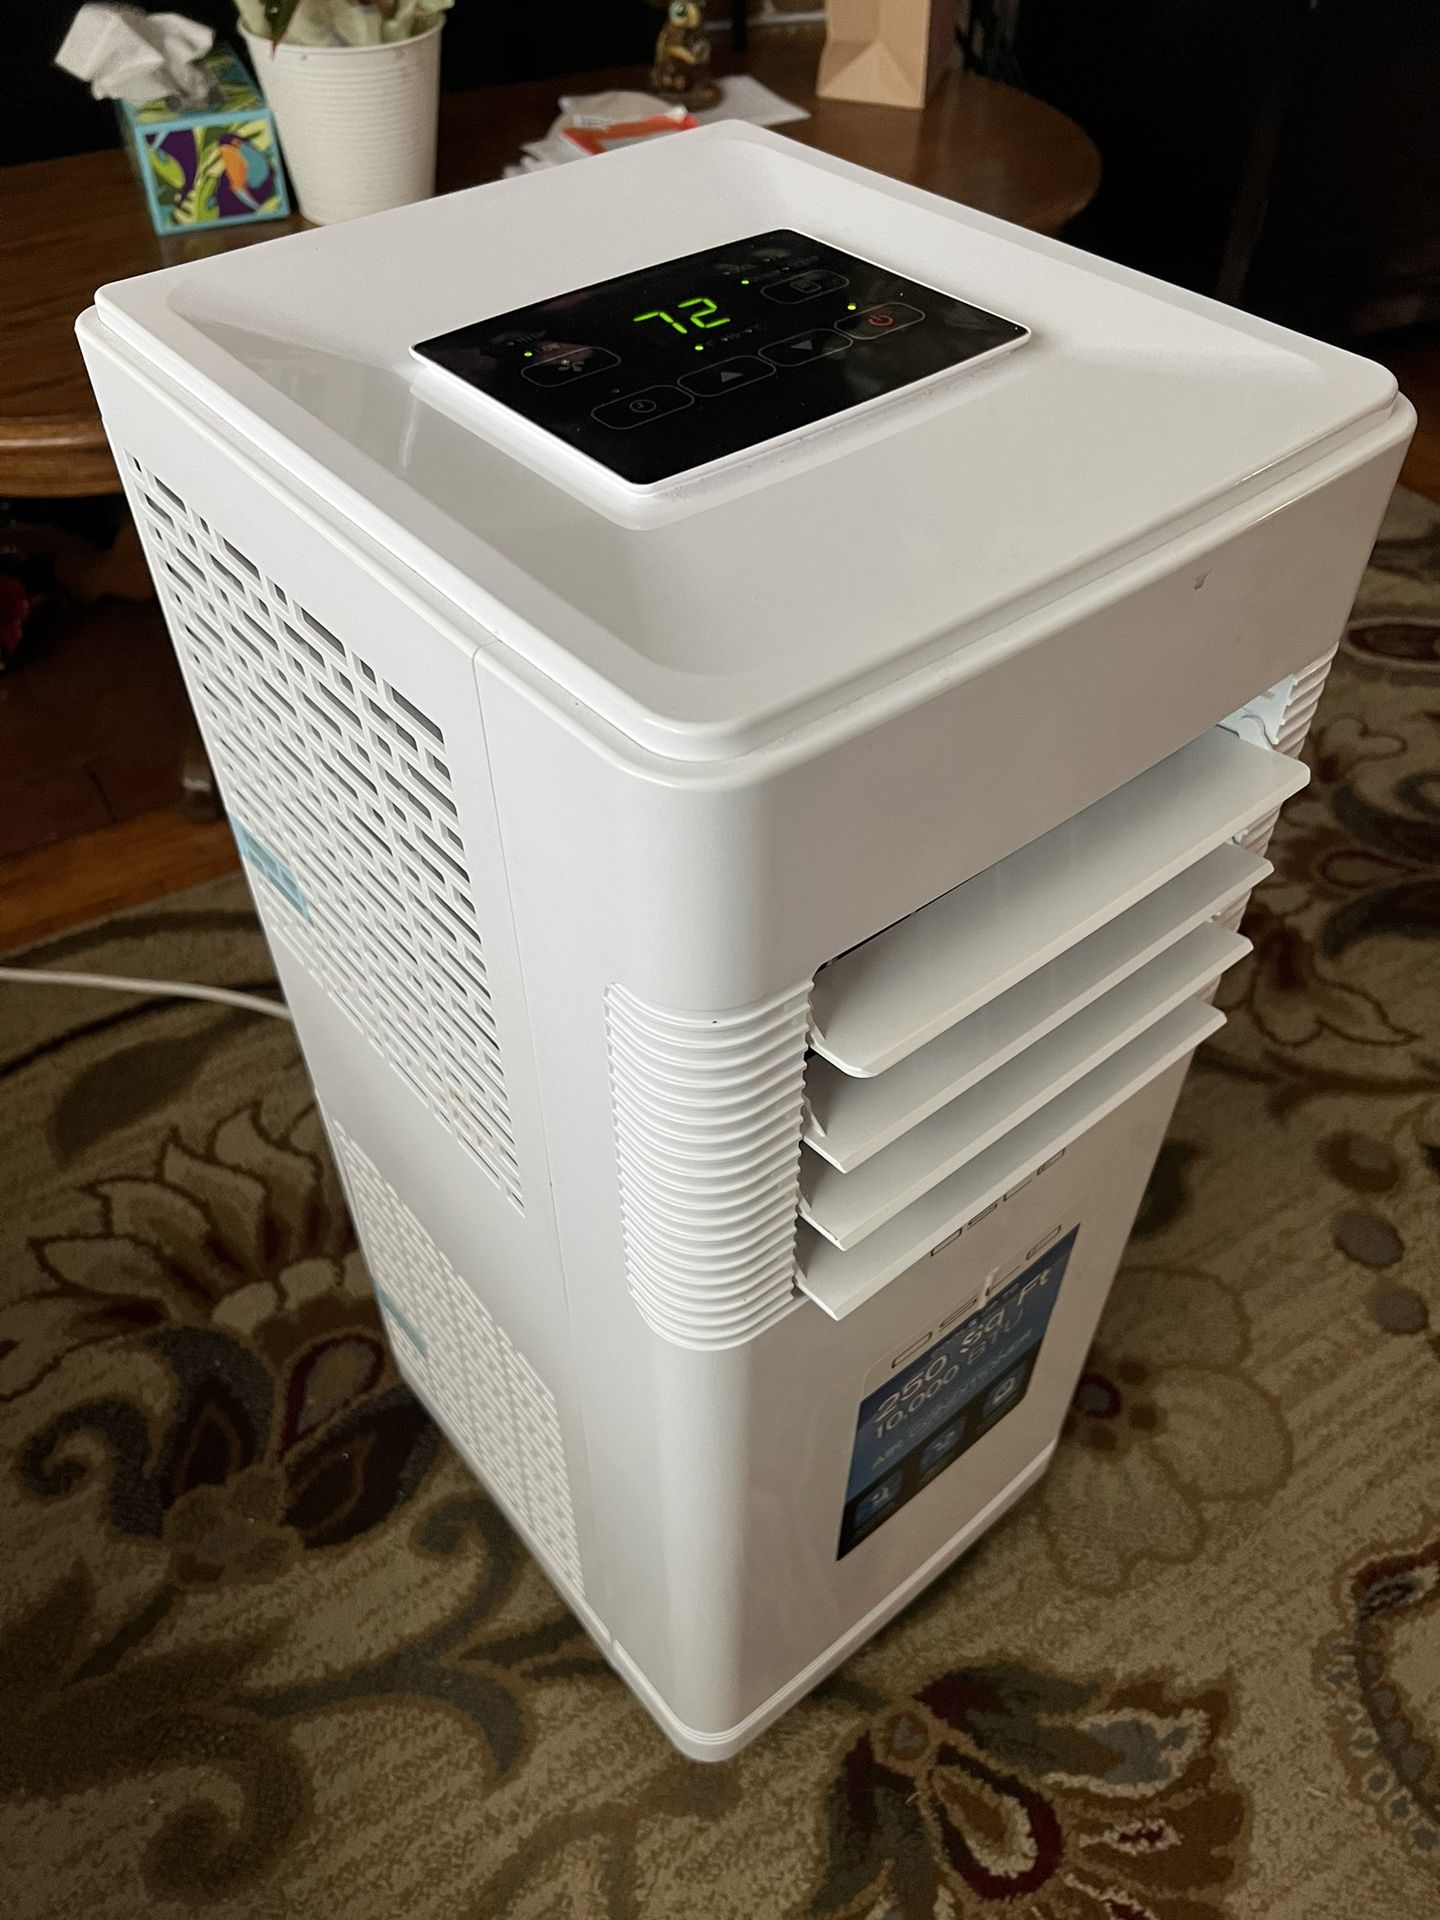 OSLO Portable Air Conditioner